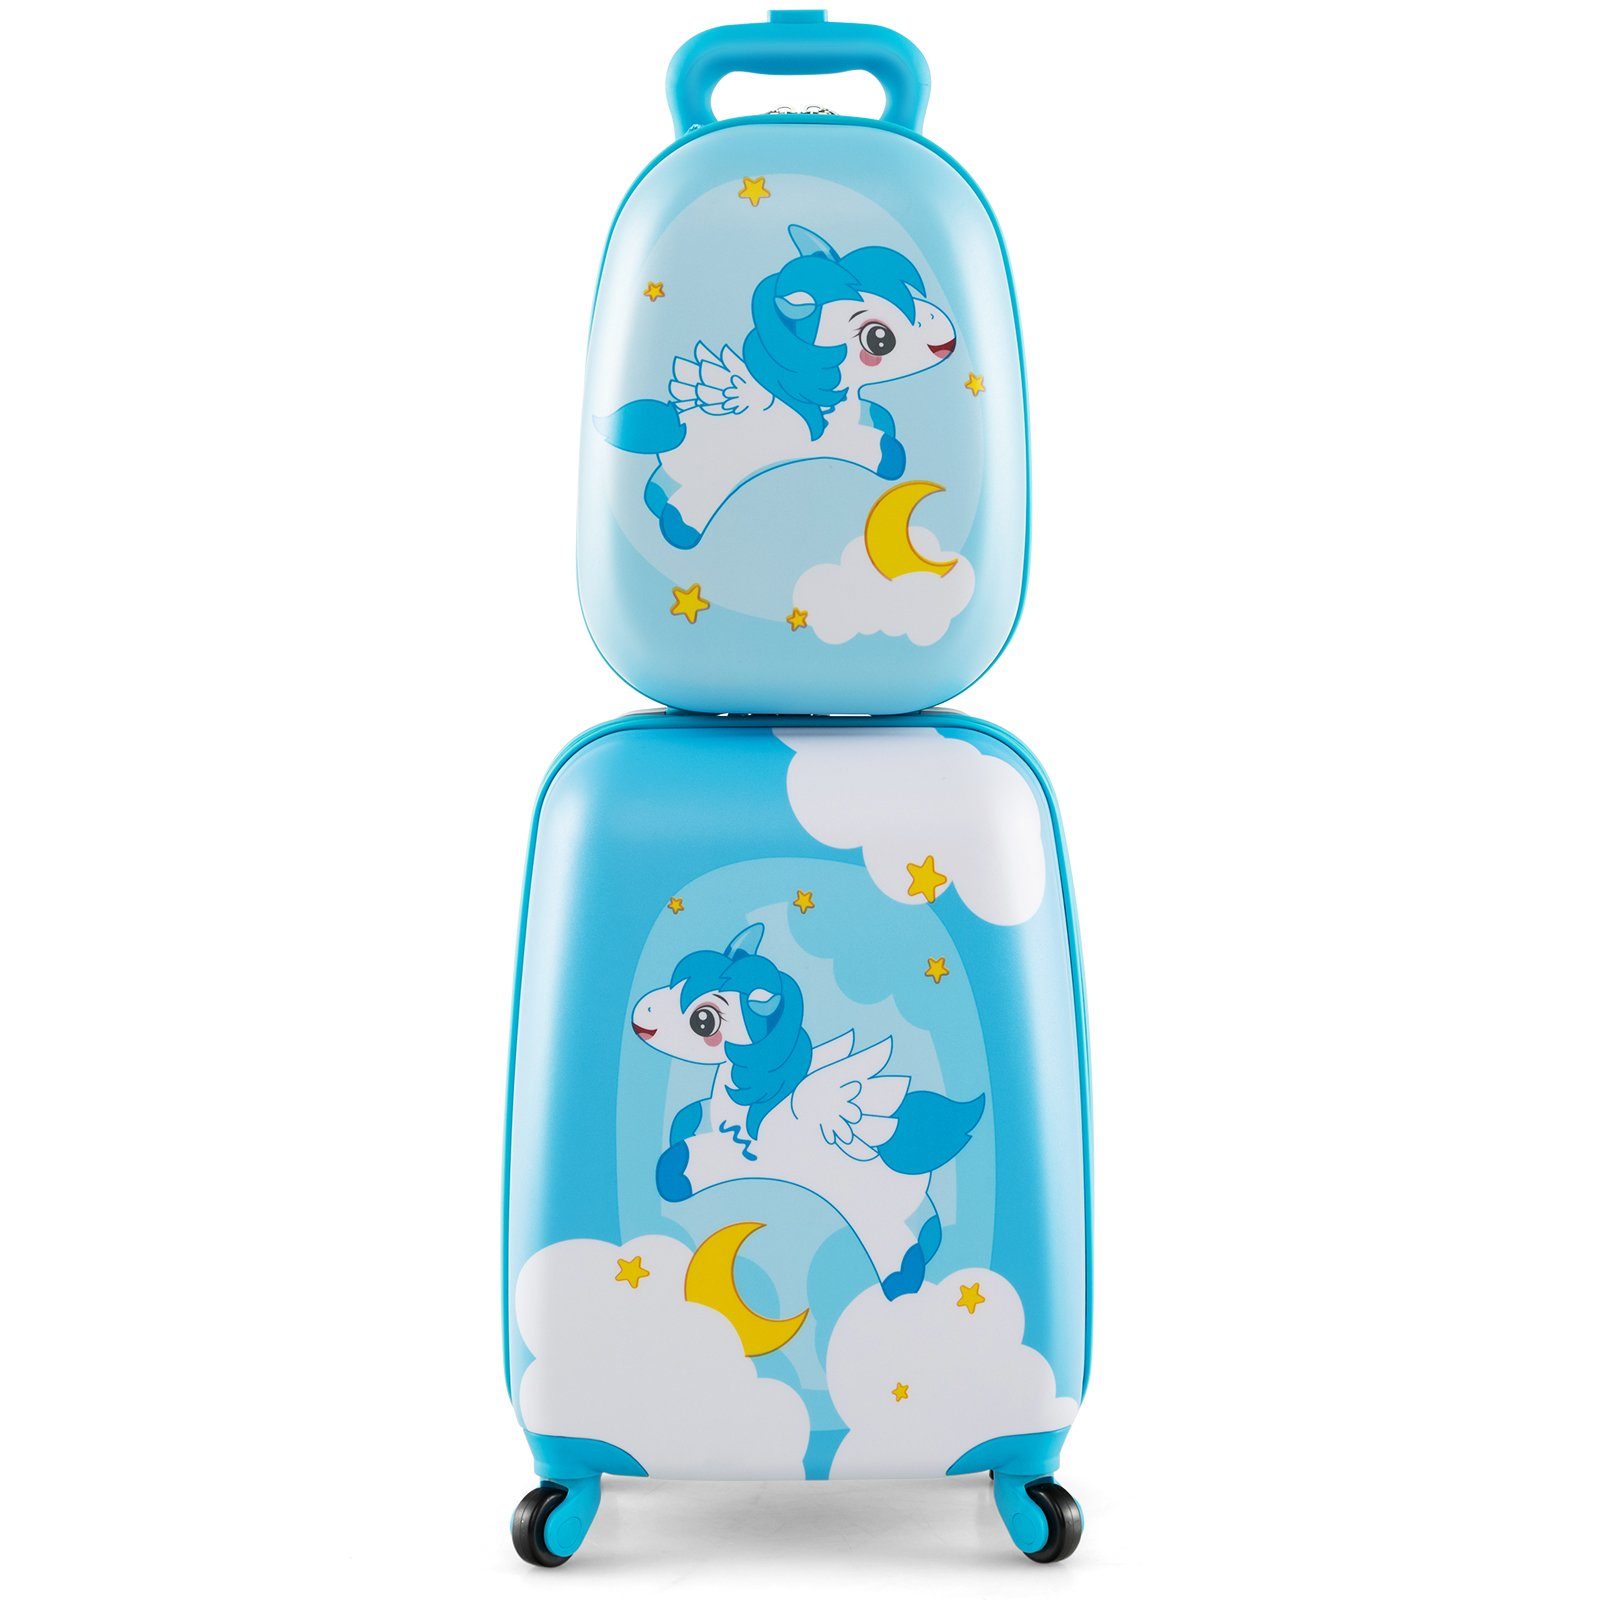 COSTWAY Kinderkoffer 12"+16" mit Rucksack, Kindertrolley blau Einhorn